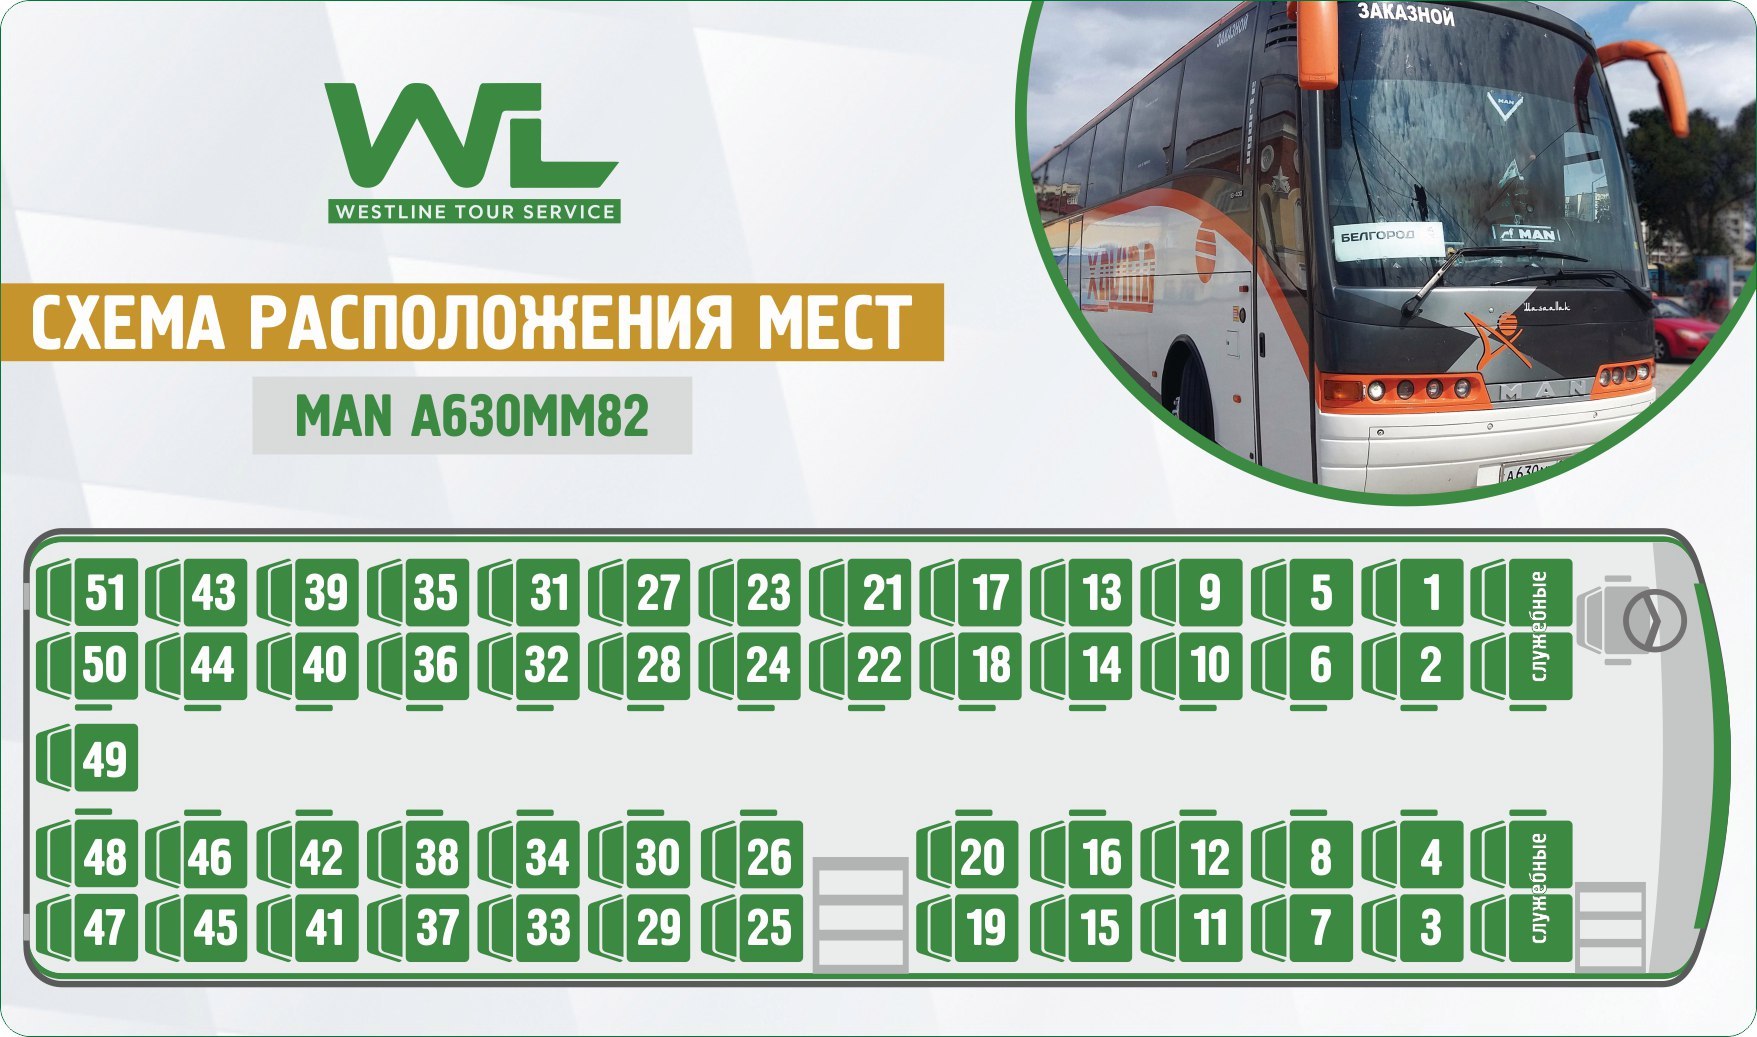 Москва расположение автобусов. Нумерация мест в автобусе сетра. Неоплан 49 автобус расположение мест. Neoplan Neoplan (49 мест). Автобус ман 49 мест схема салона.